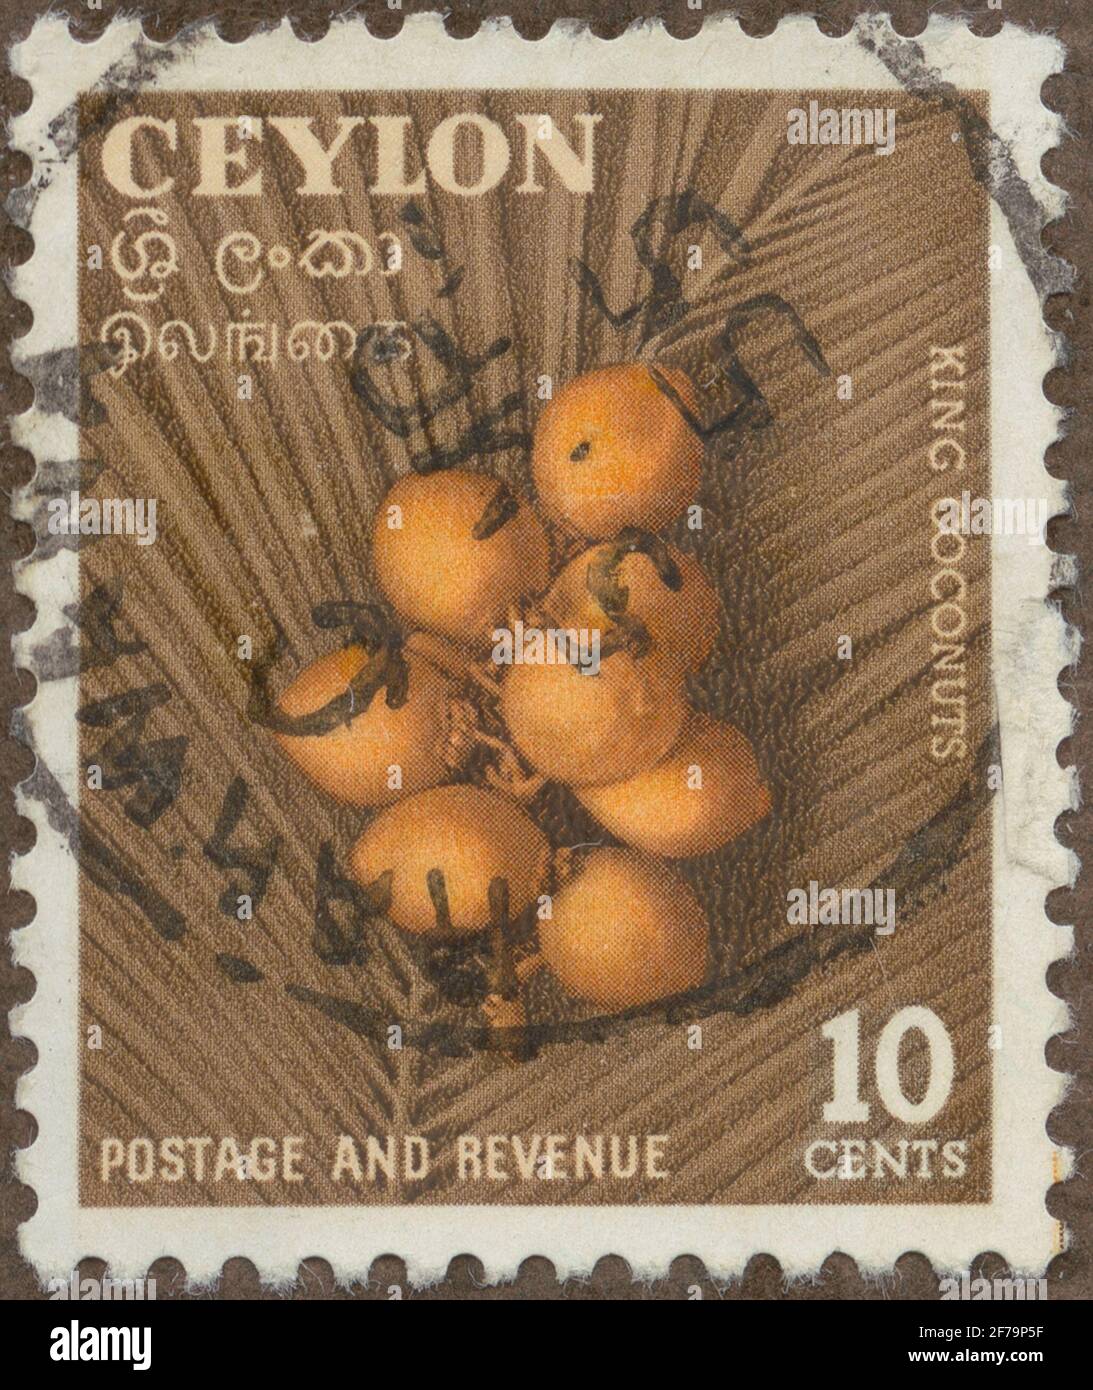 Die Briefmarke der philatelistischen Motivsammlung von Gösta Bodman begann 1950.die Briefmarke aus Ceylon, 1954. Motive der sogenannten 'König'-Kokosnuss. Stockfoto